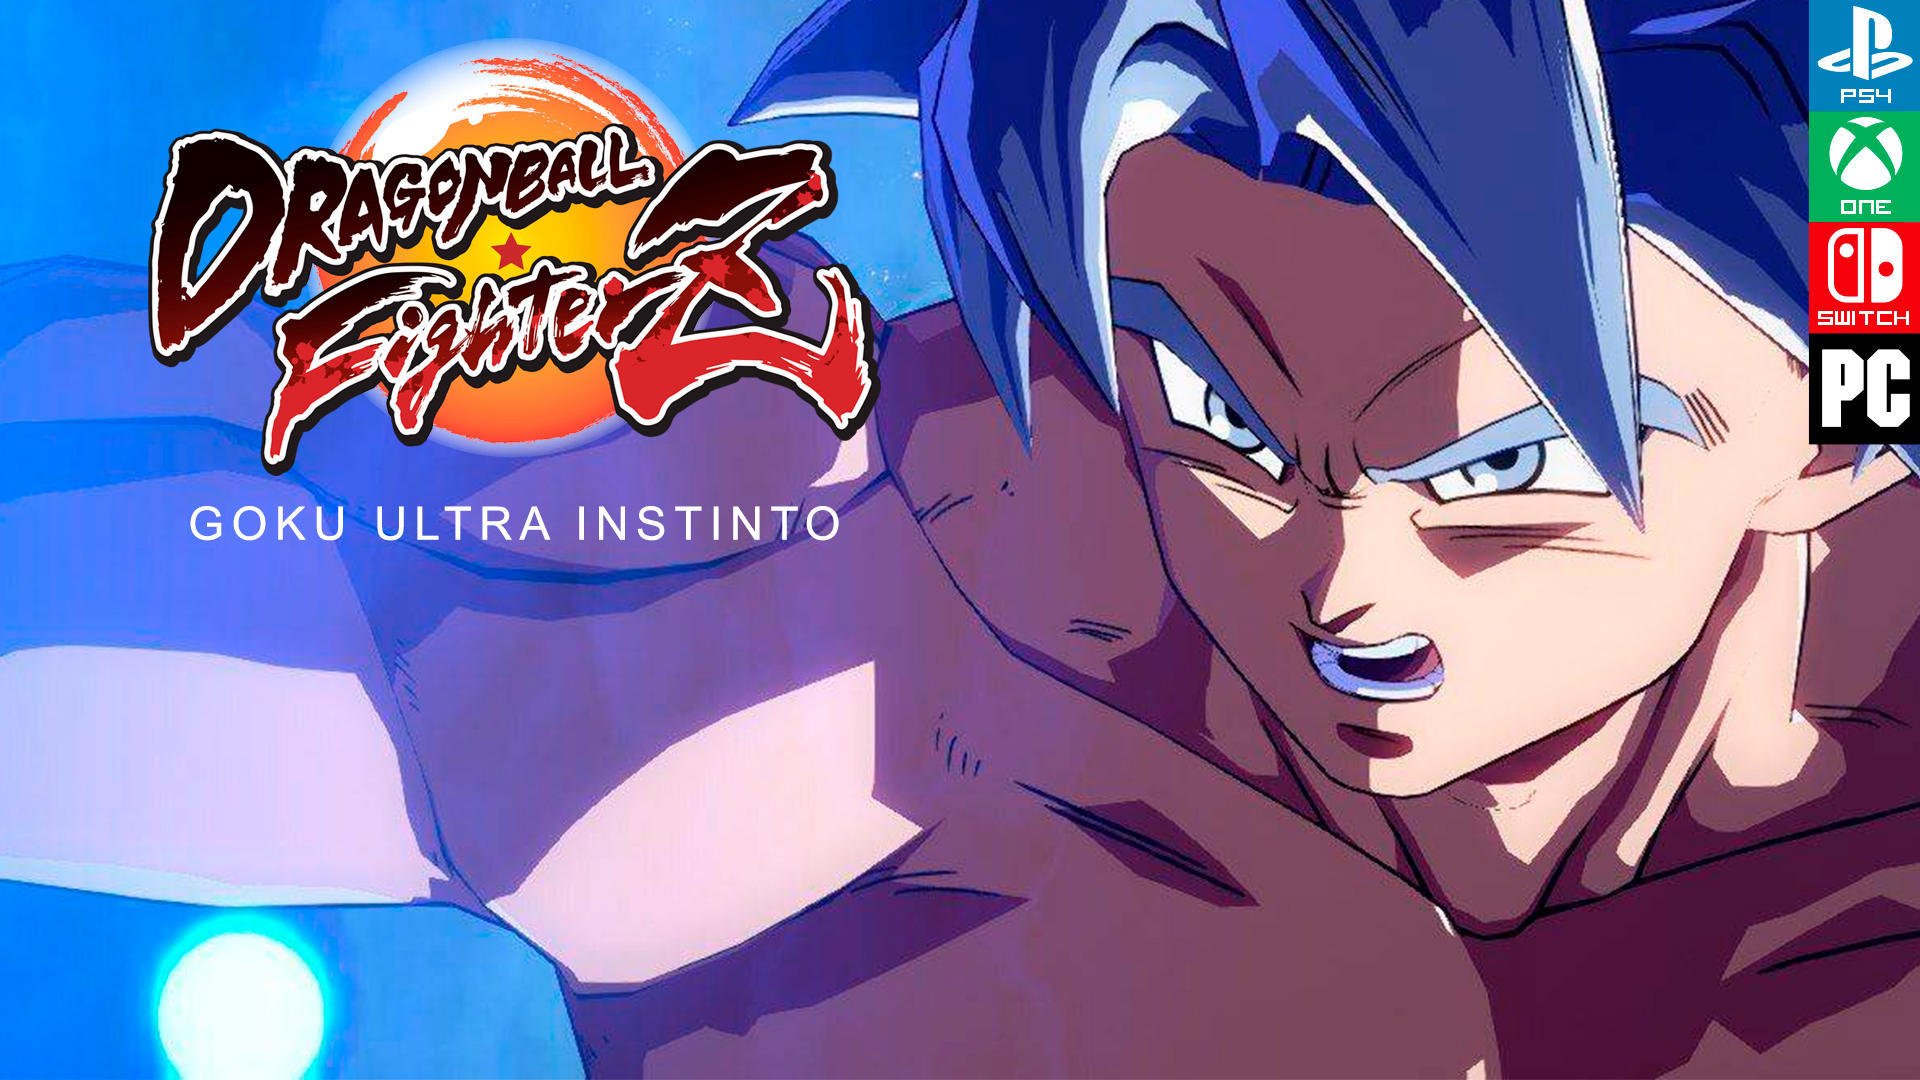 Impresiones Dragon Ball FighterZ: Goku Ultra Instinto, el nuevo personaje -  Vandal